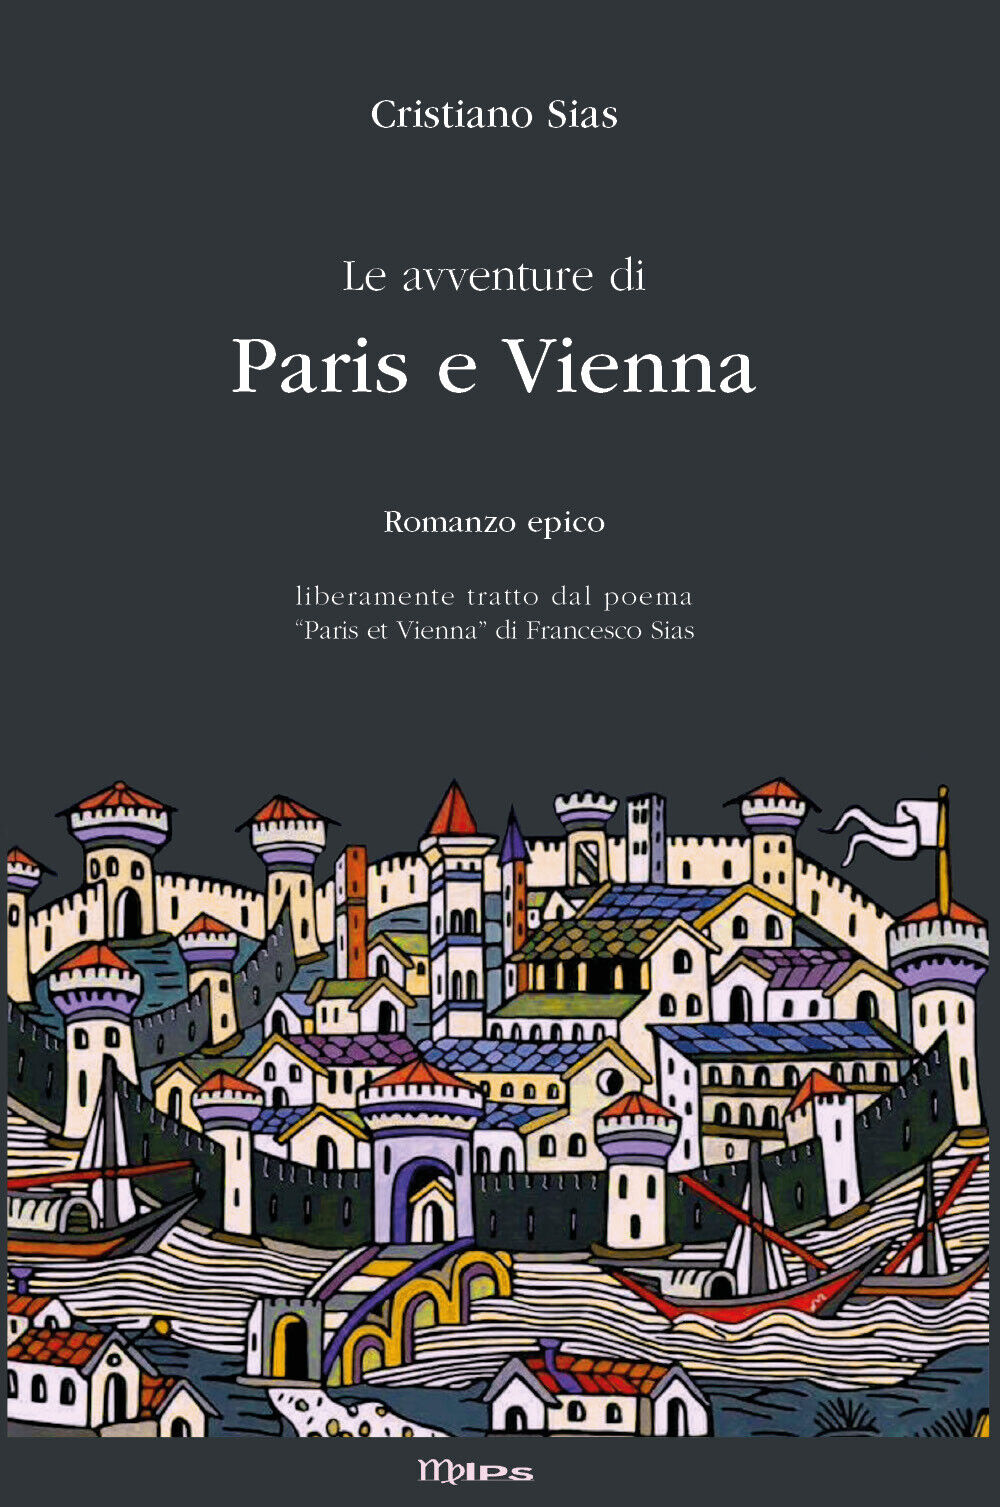 Le avventure di Paris e Vienna. Romanzo epico di Cristiano Sias,  2021,  Youcanp libro usato